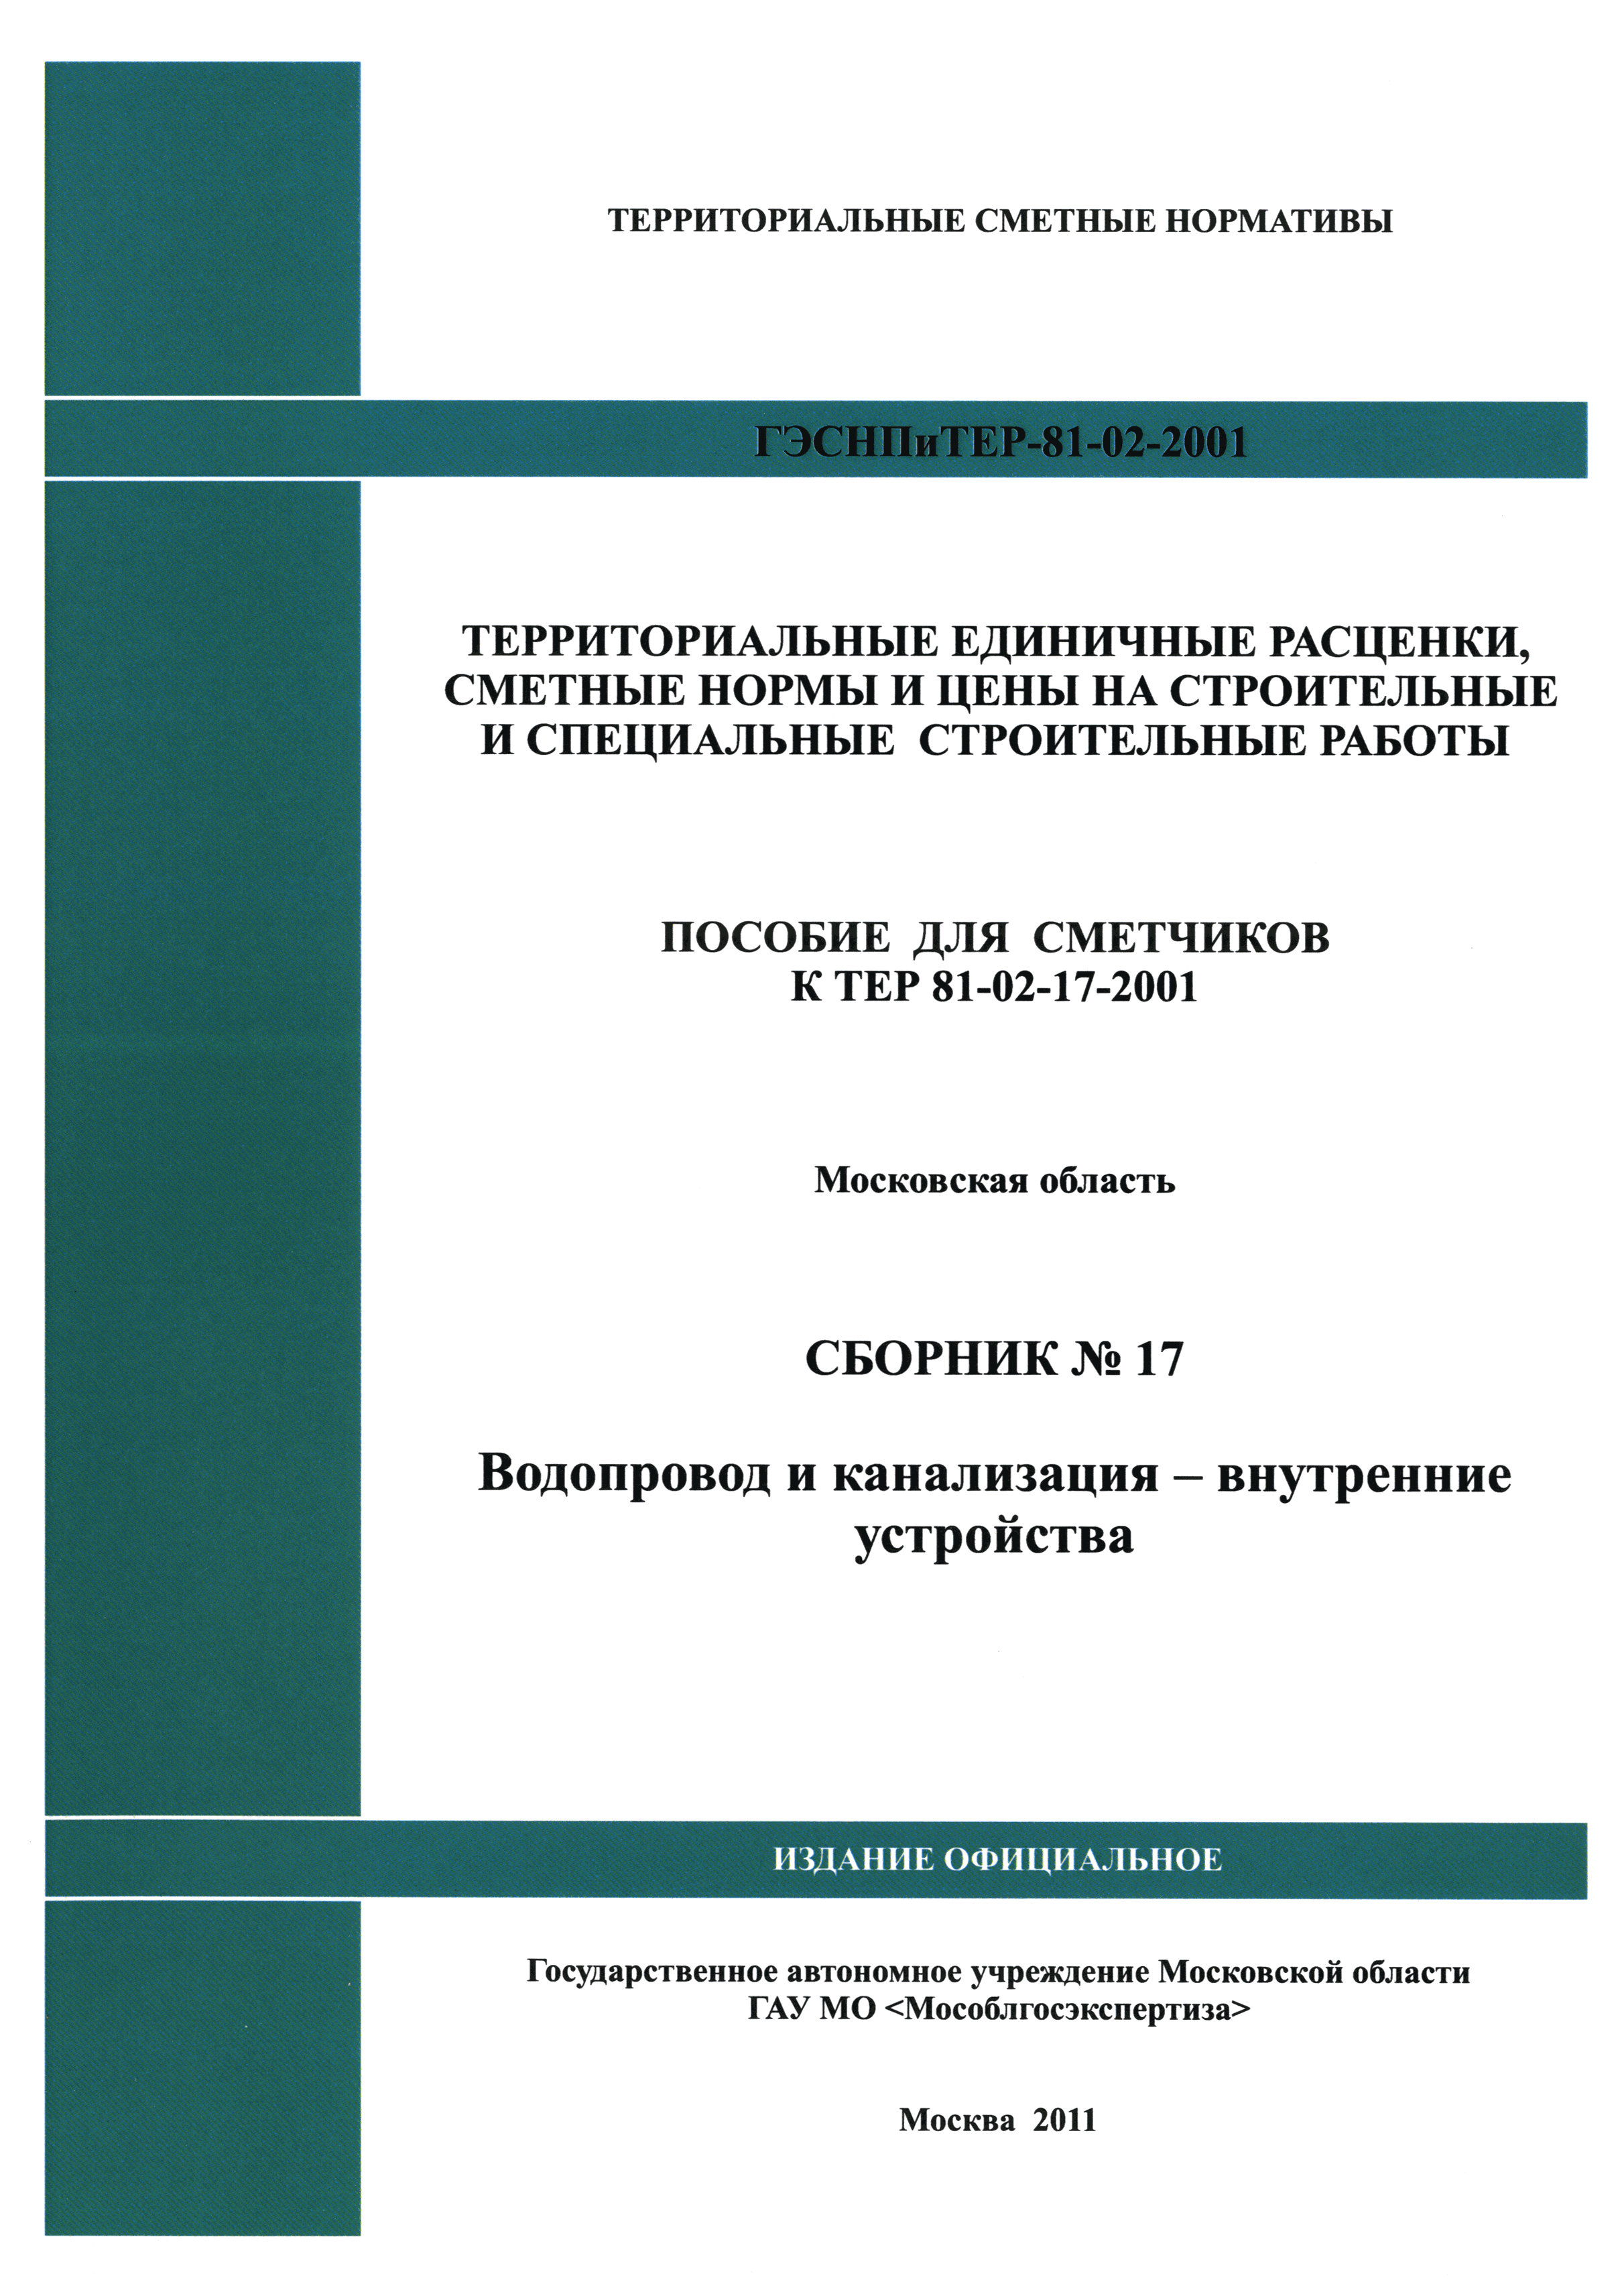 ГЭСНПиТЕР 2001-17 Московской области